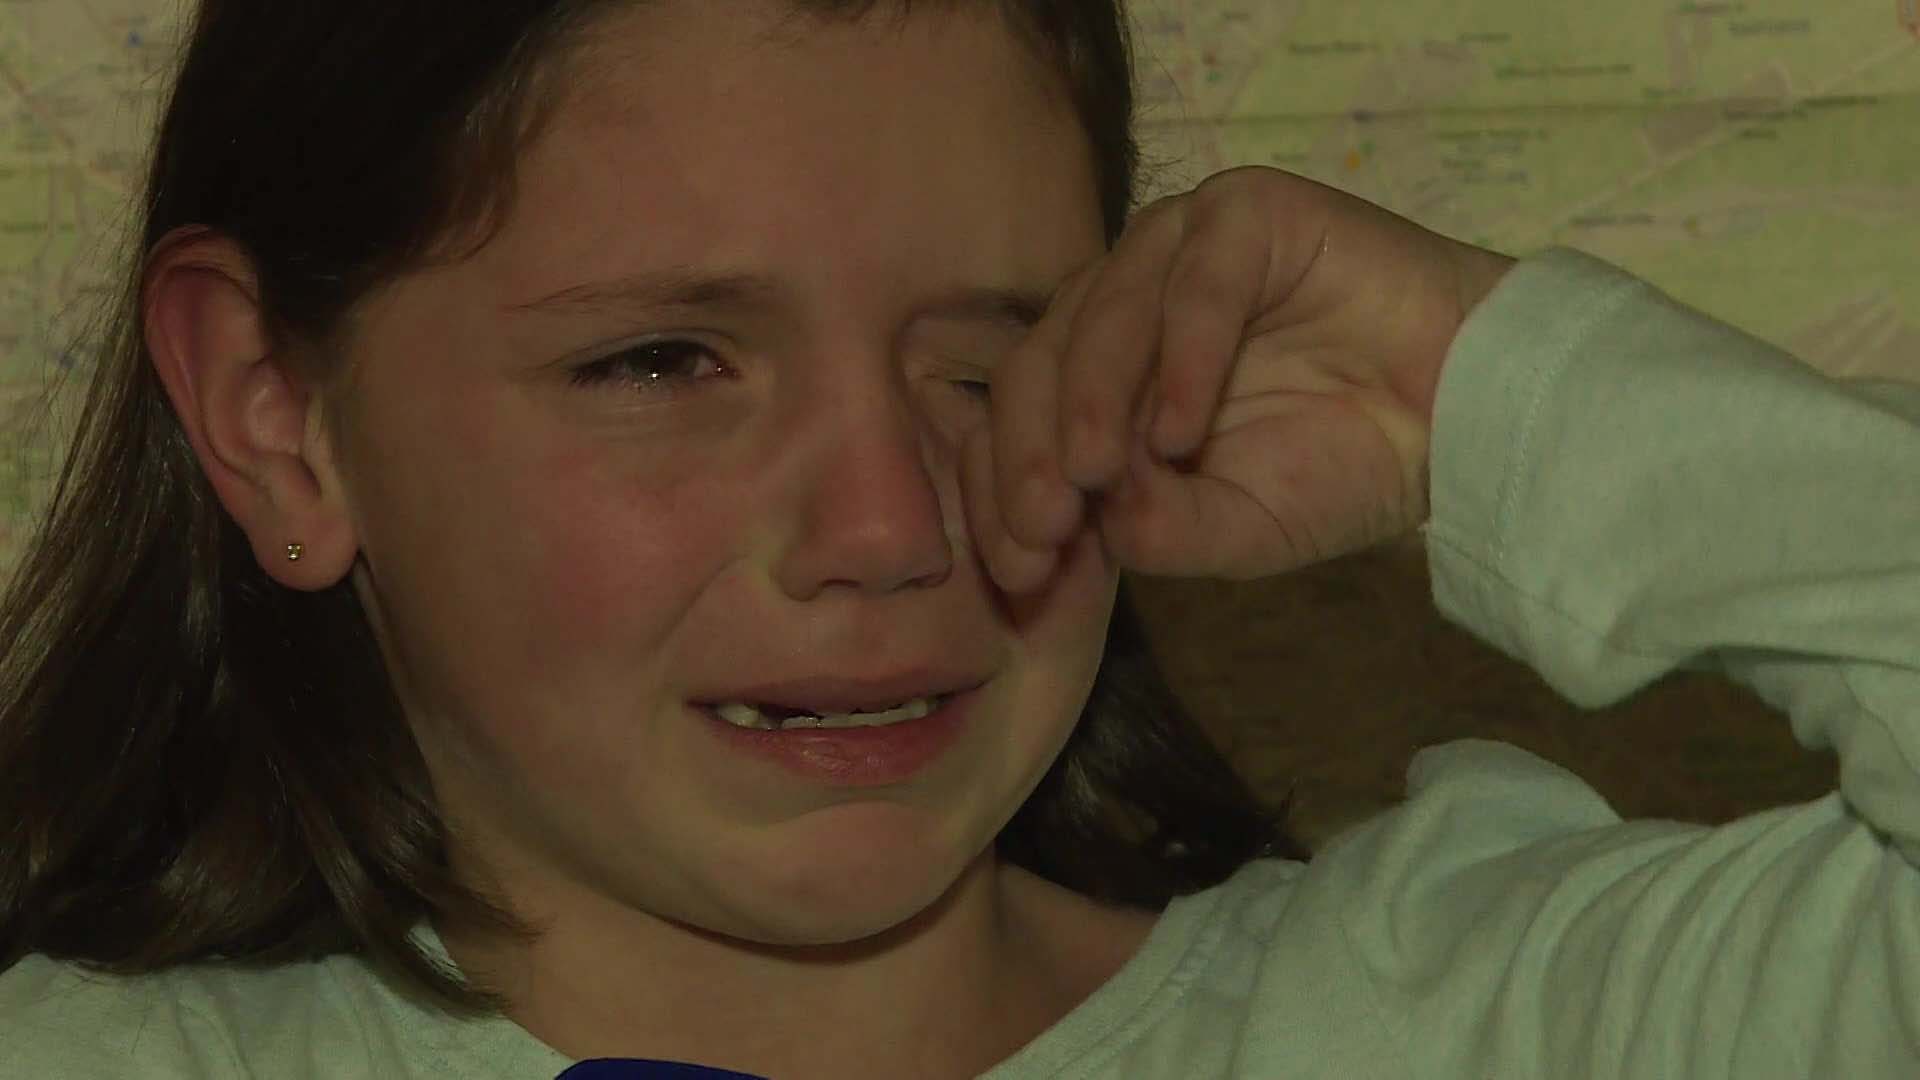 “대피소는 춥고 무서워요”…9살 마리아의 눈으로 본 전쟁